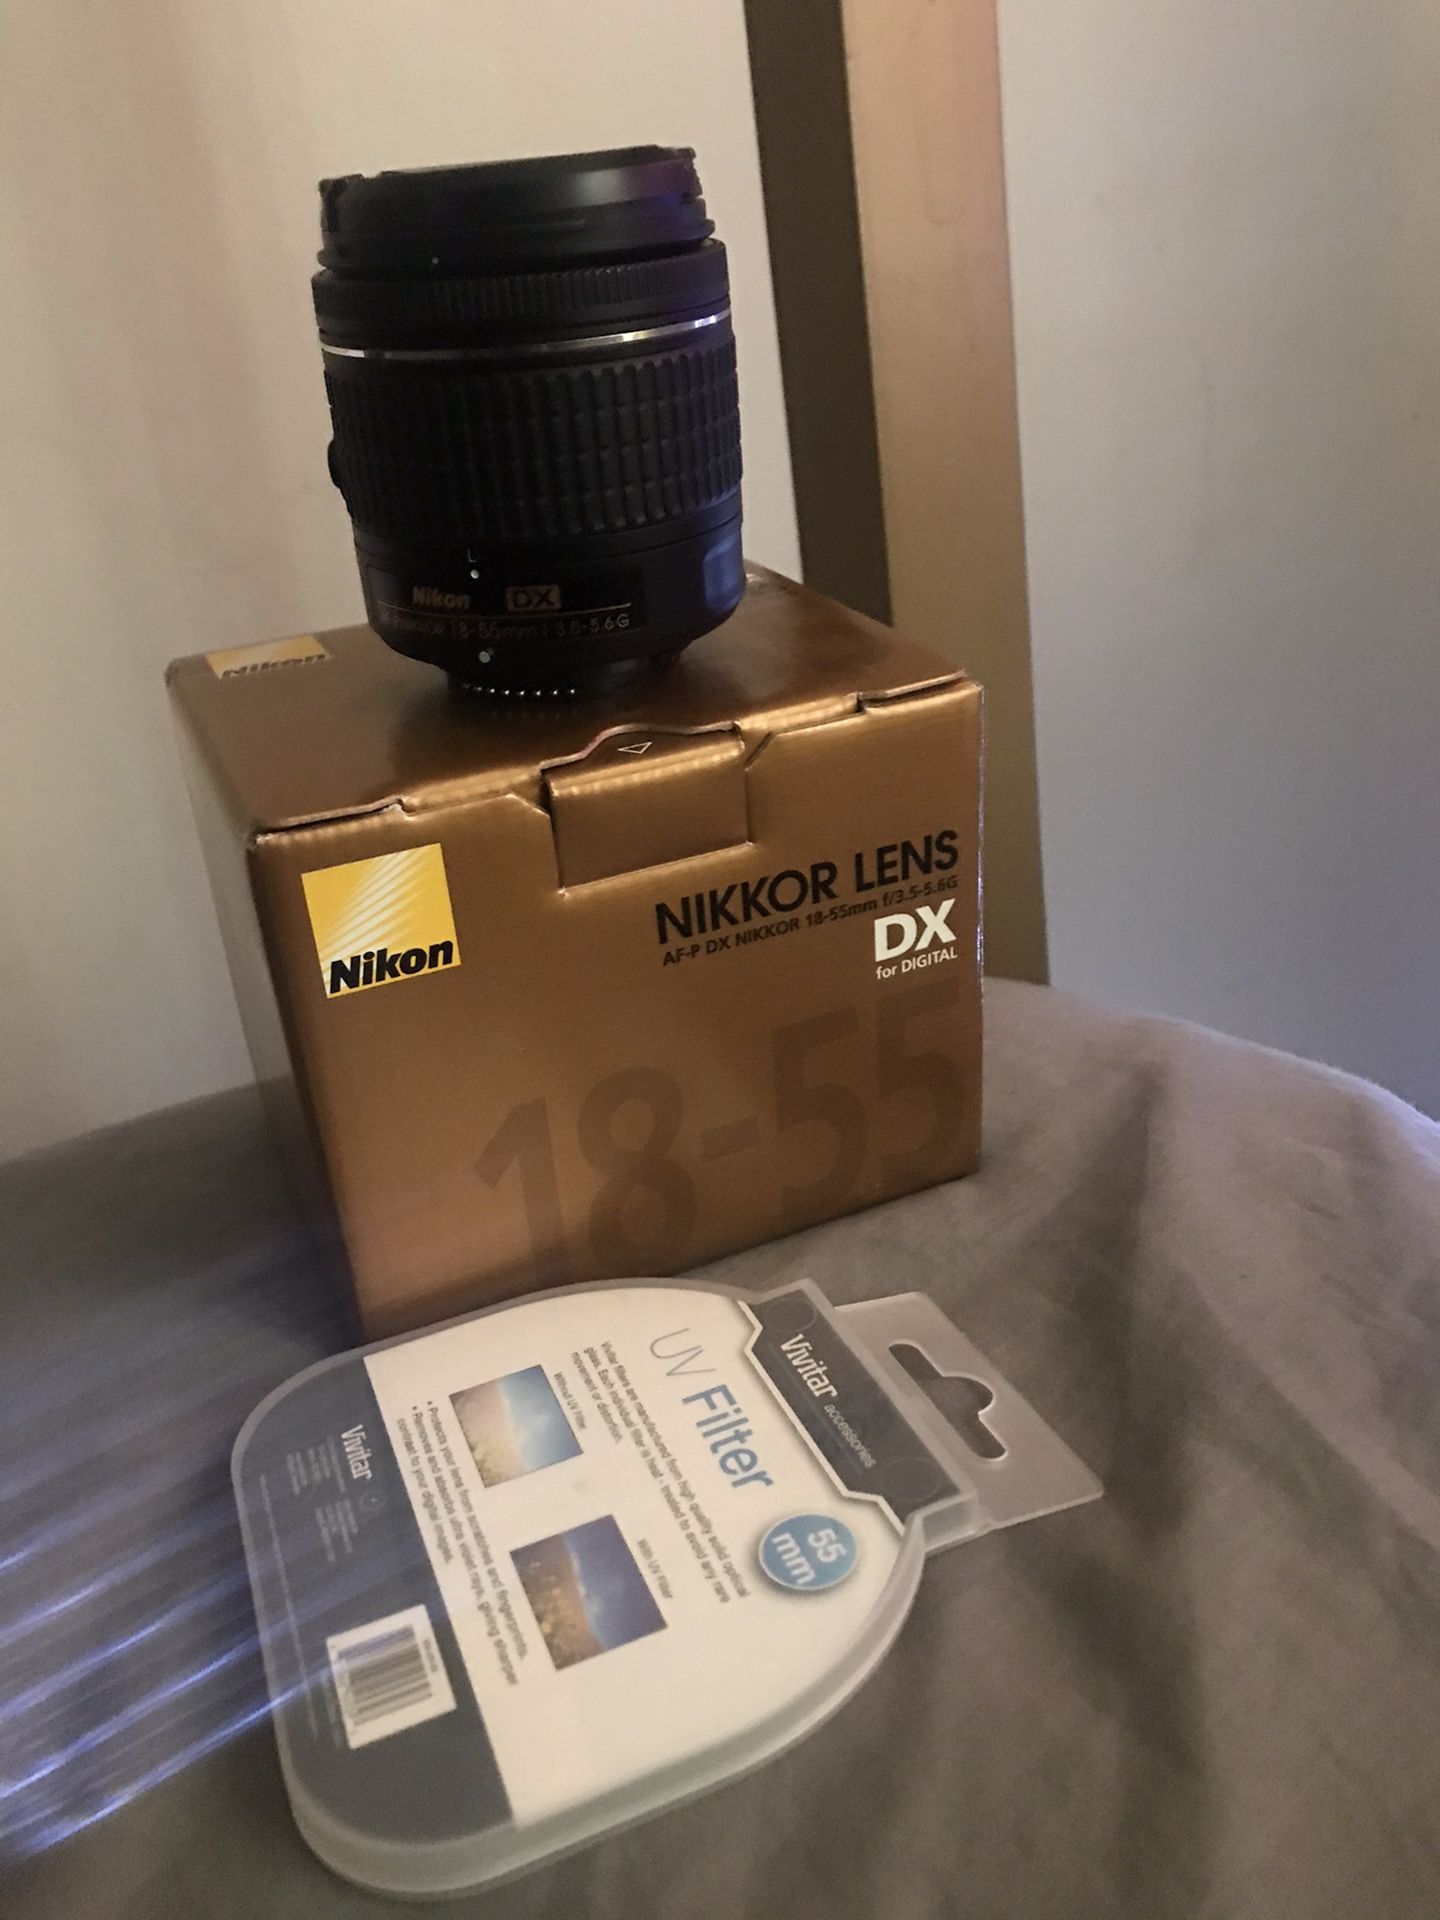 Nikkor Lens 18-55mm Kit Lens